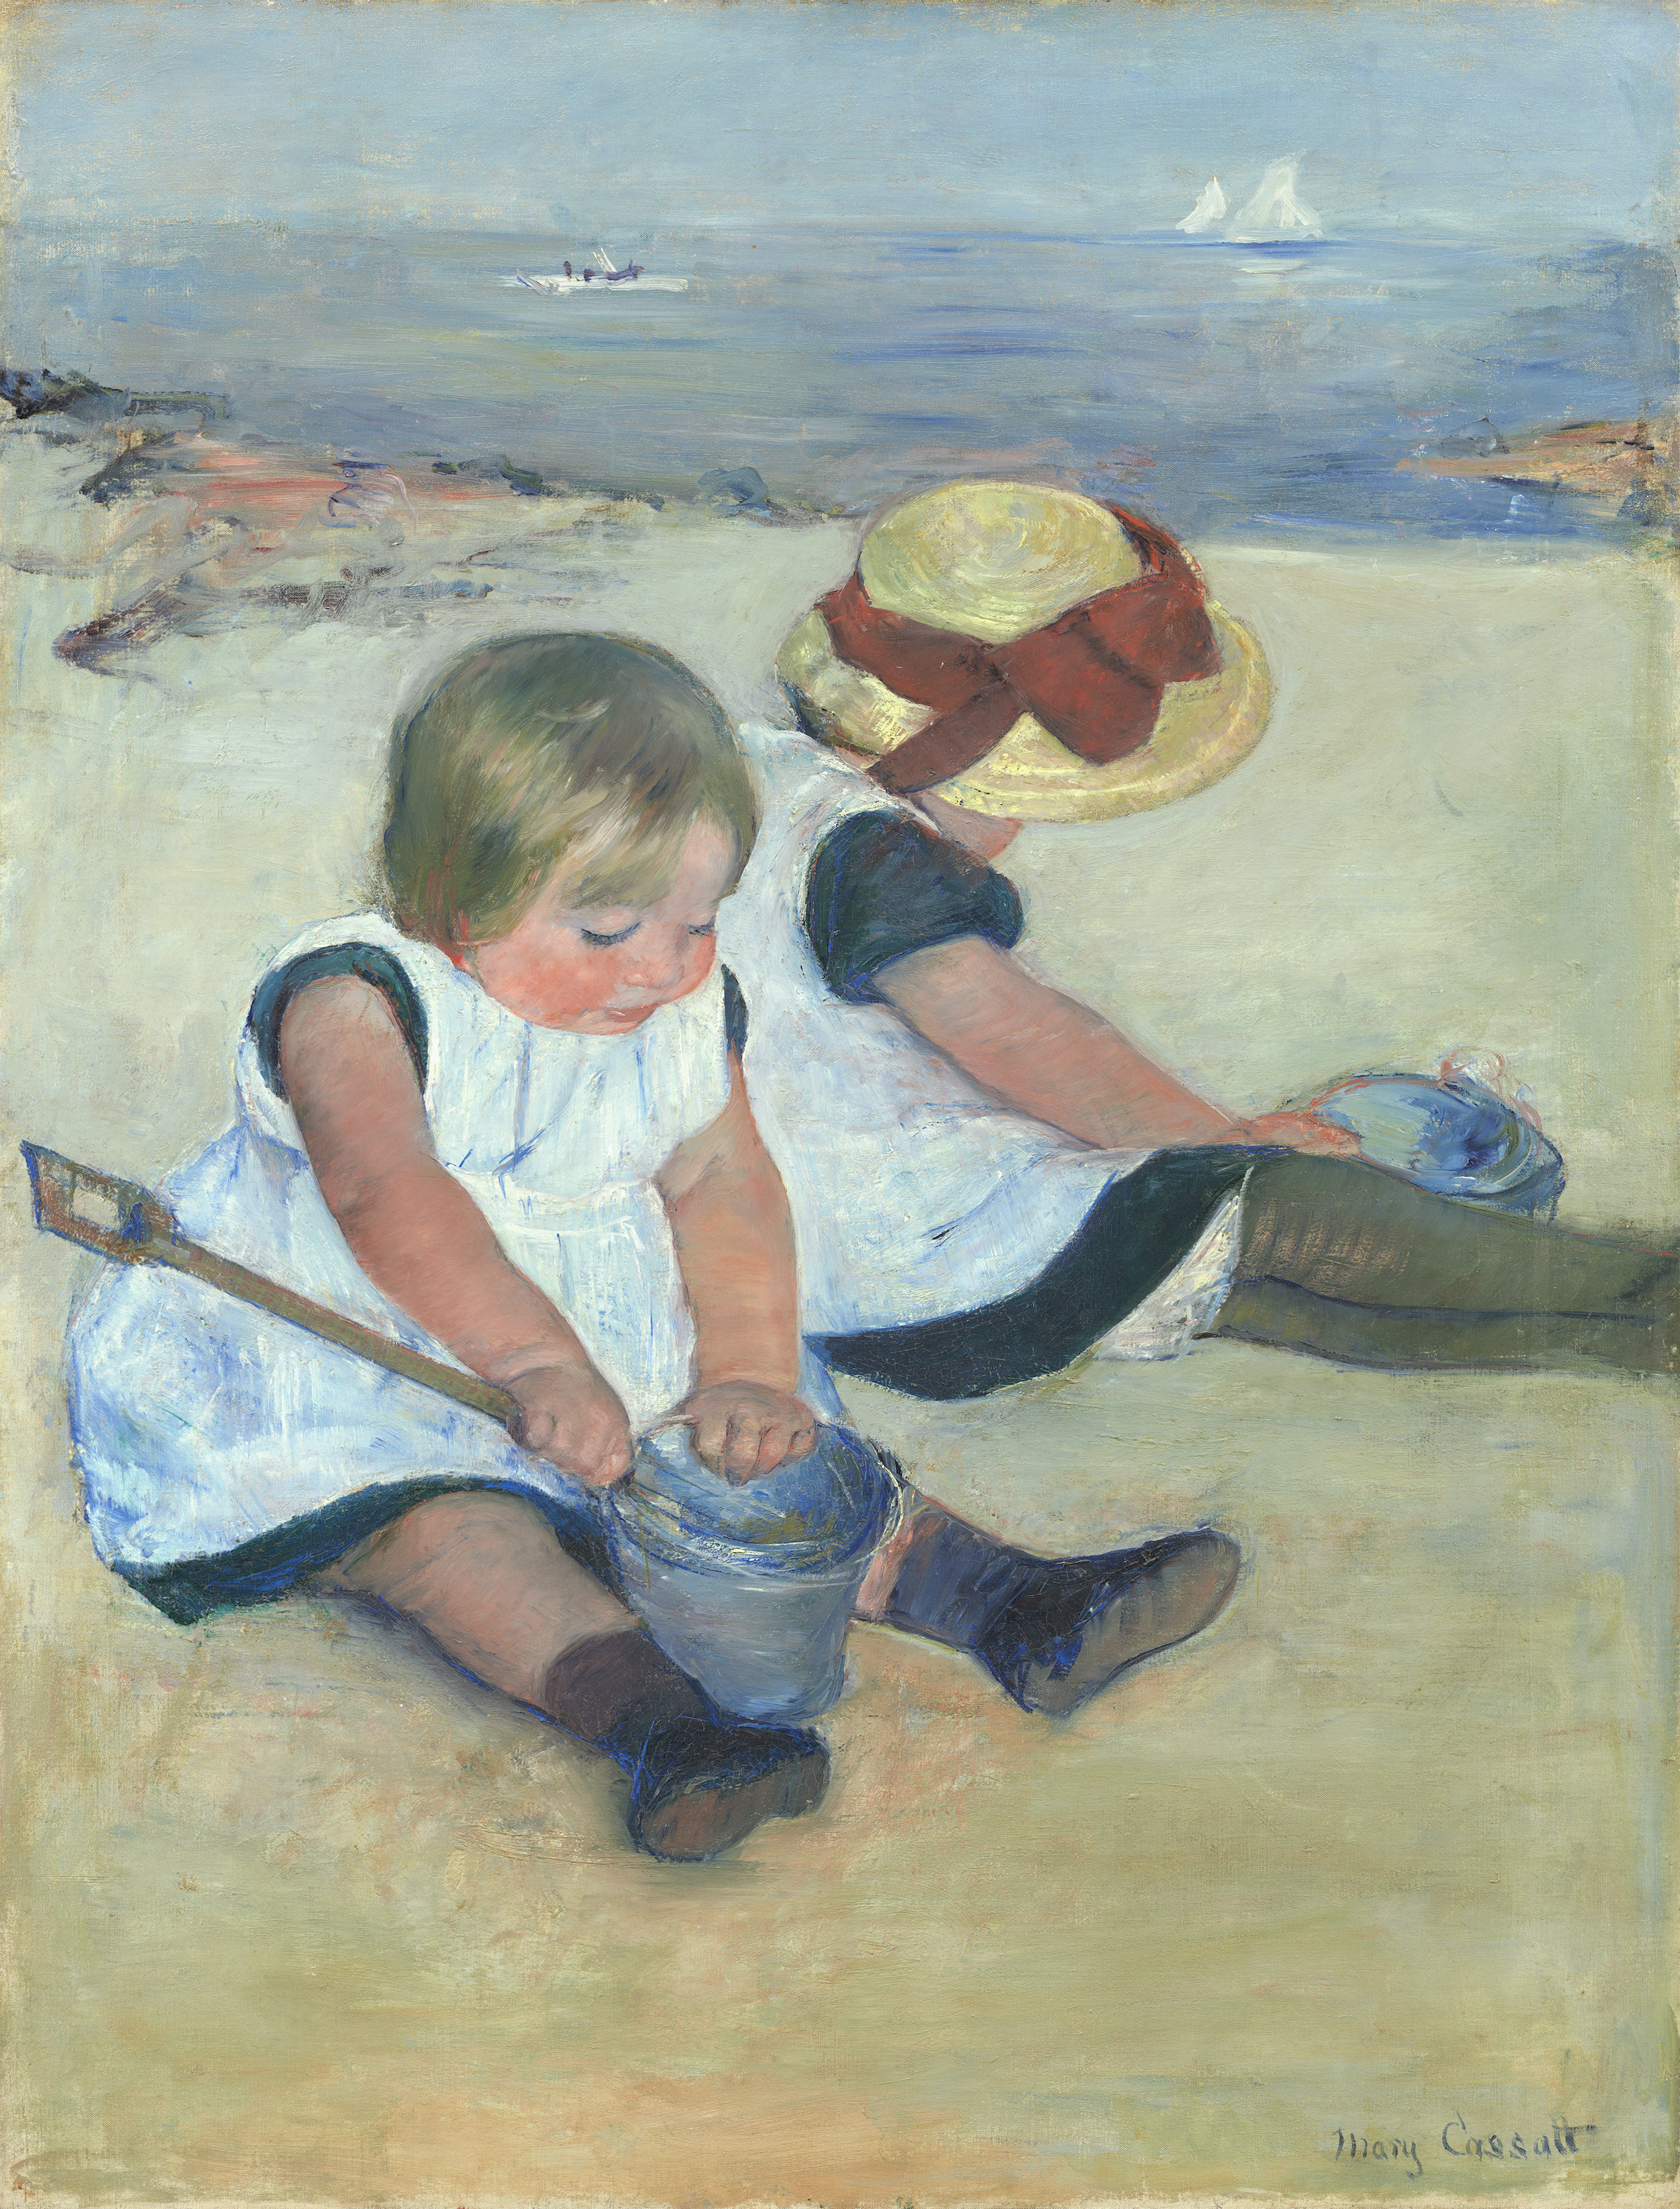 Дети, играющие на пляже by Мэри Кассат - 1884 - 97.4 x 74.2 см 